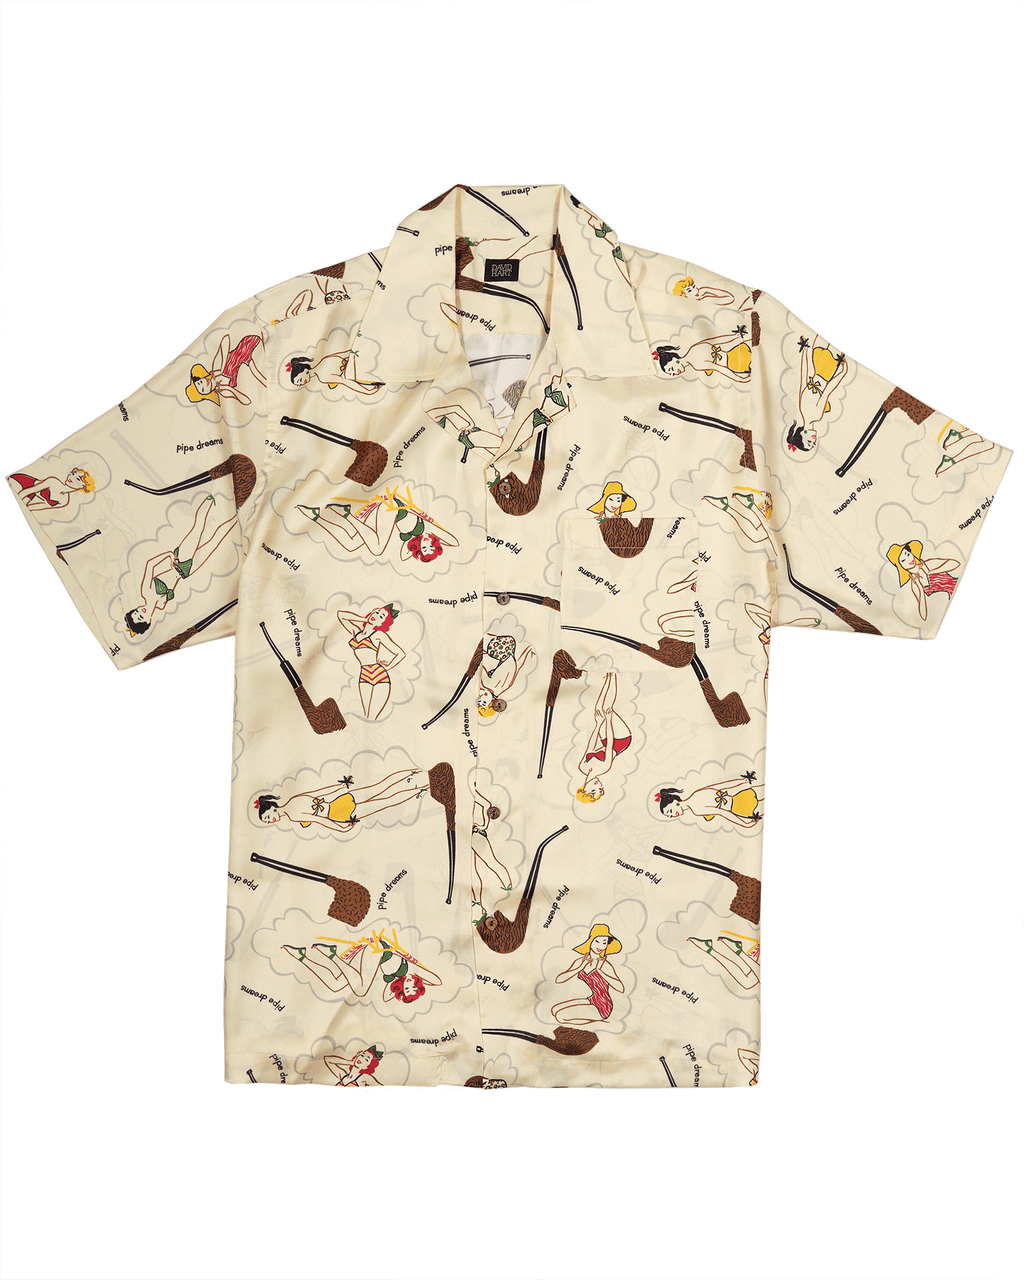 pin-up camp shirt